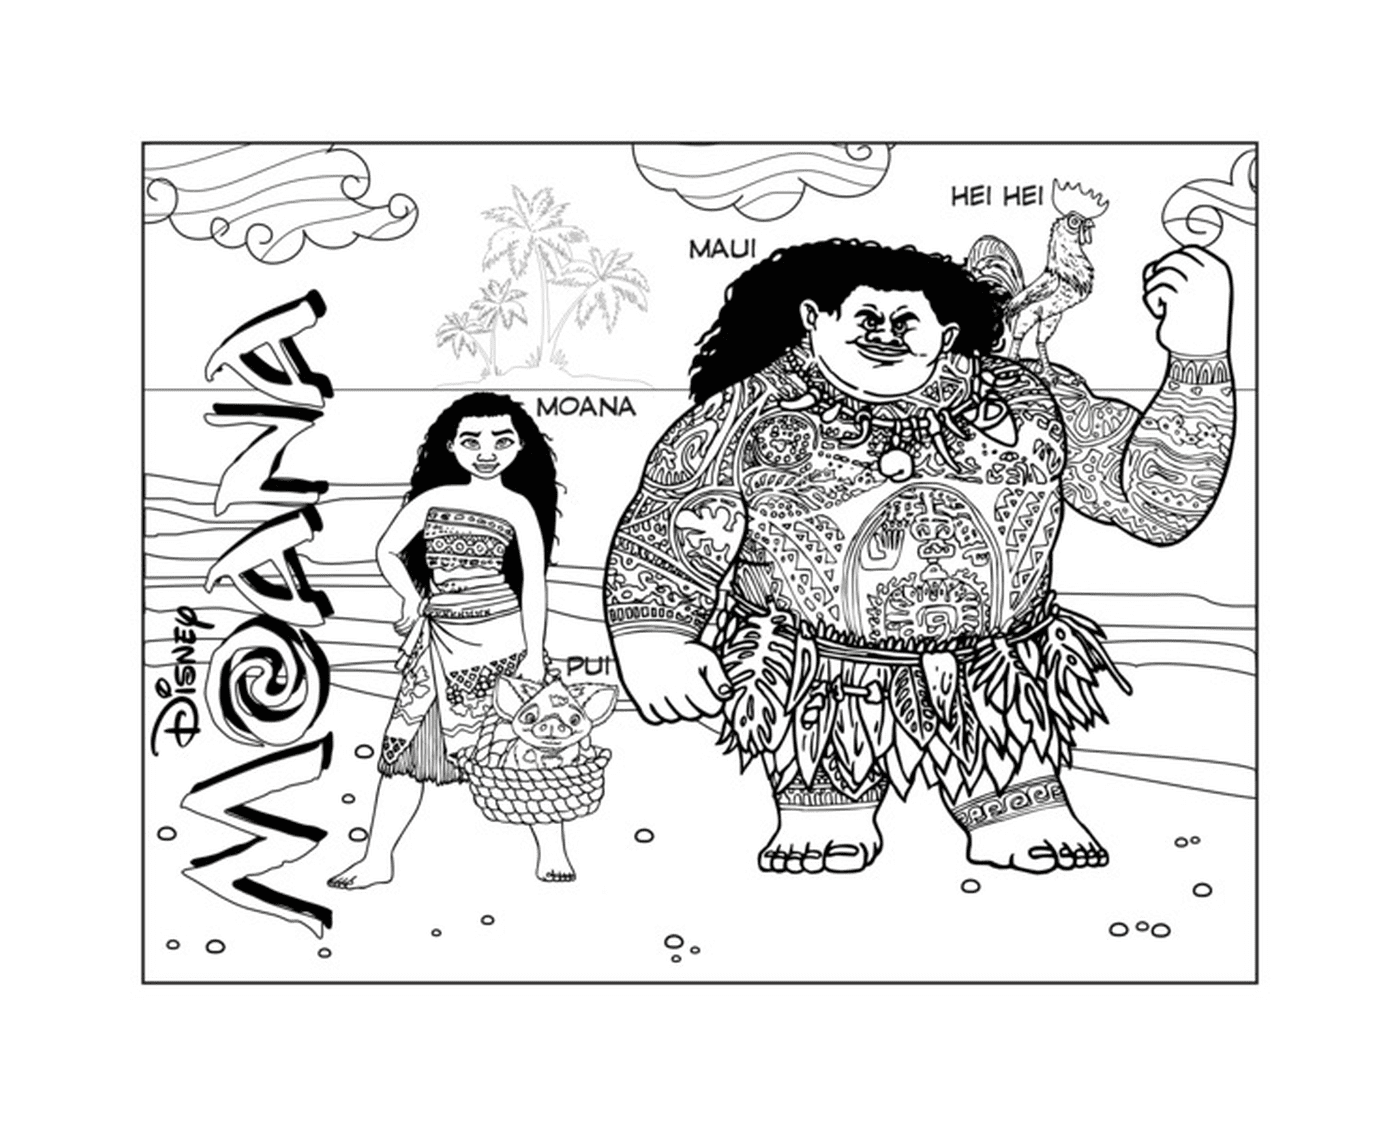  Moana and Maui, adventurer duo 